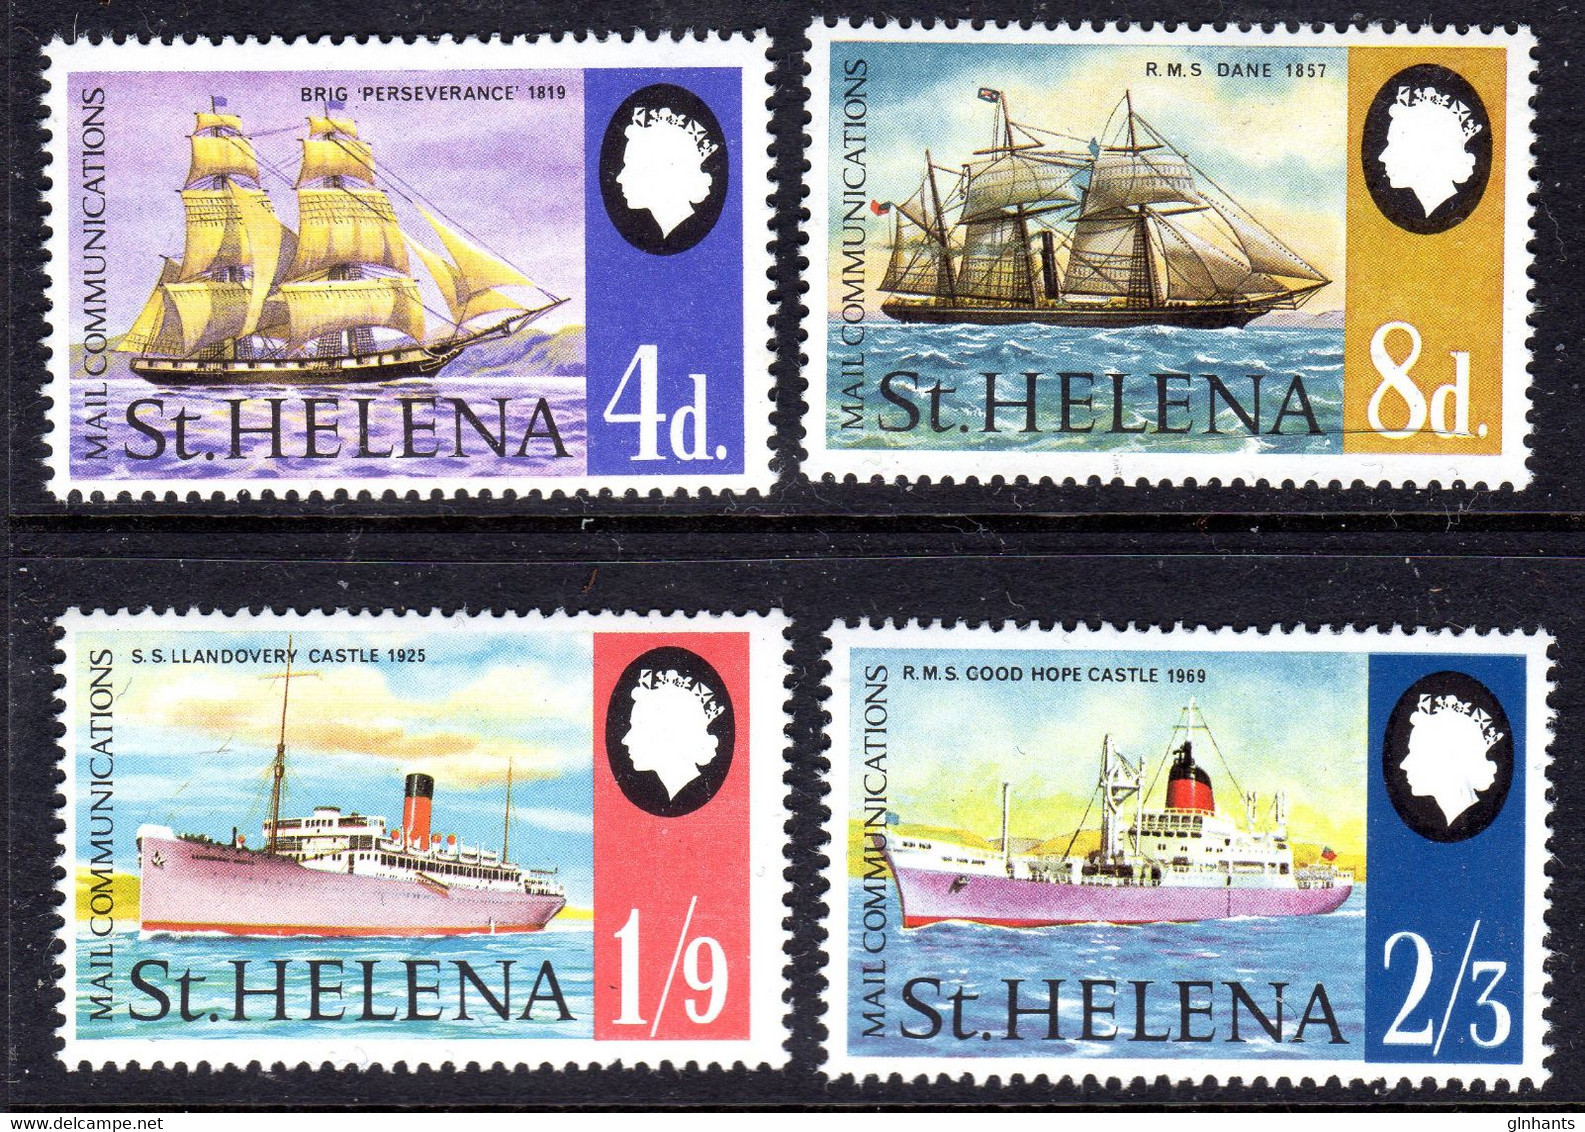 ST HELENA - 1969 MAIL COMMUNICATION SHIPS SET (4V) FINE MNH ** SG 241-244 X 4 - Saint Helena Island